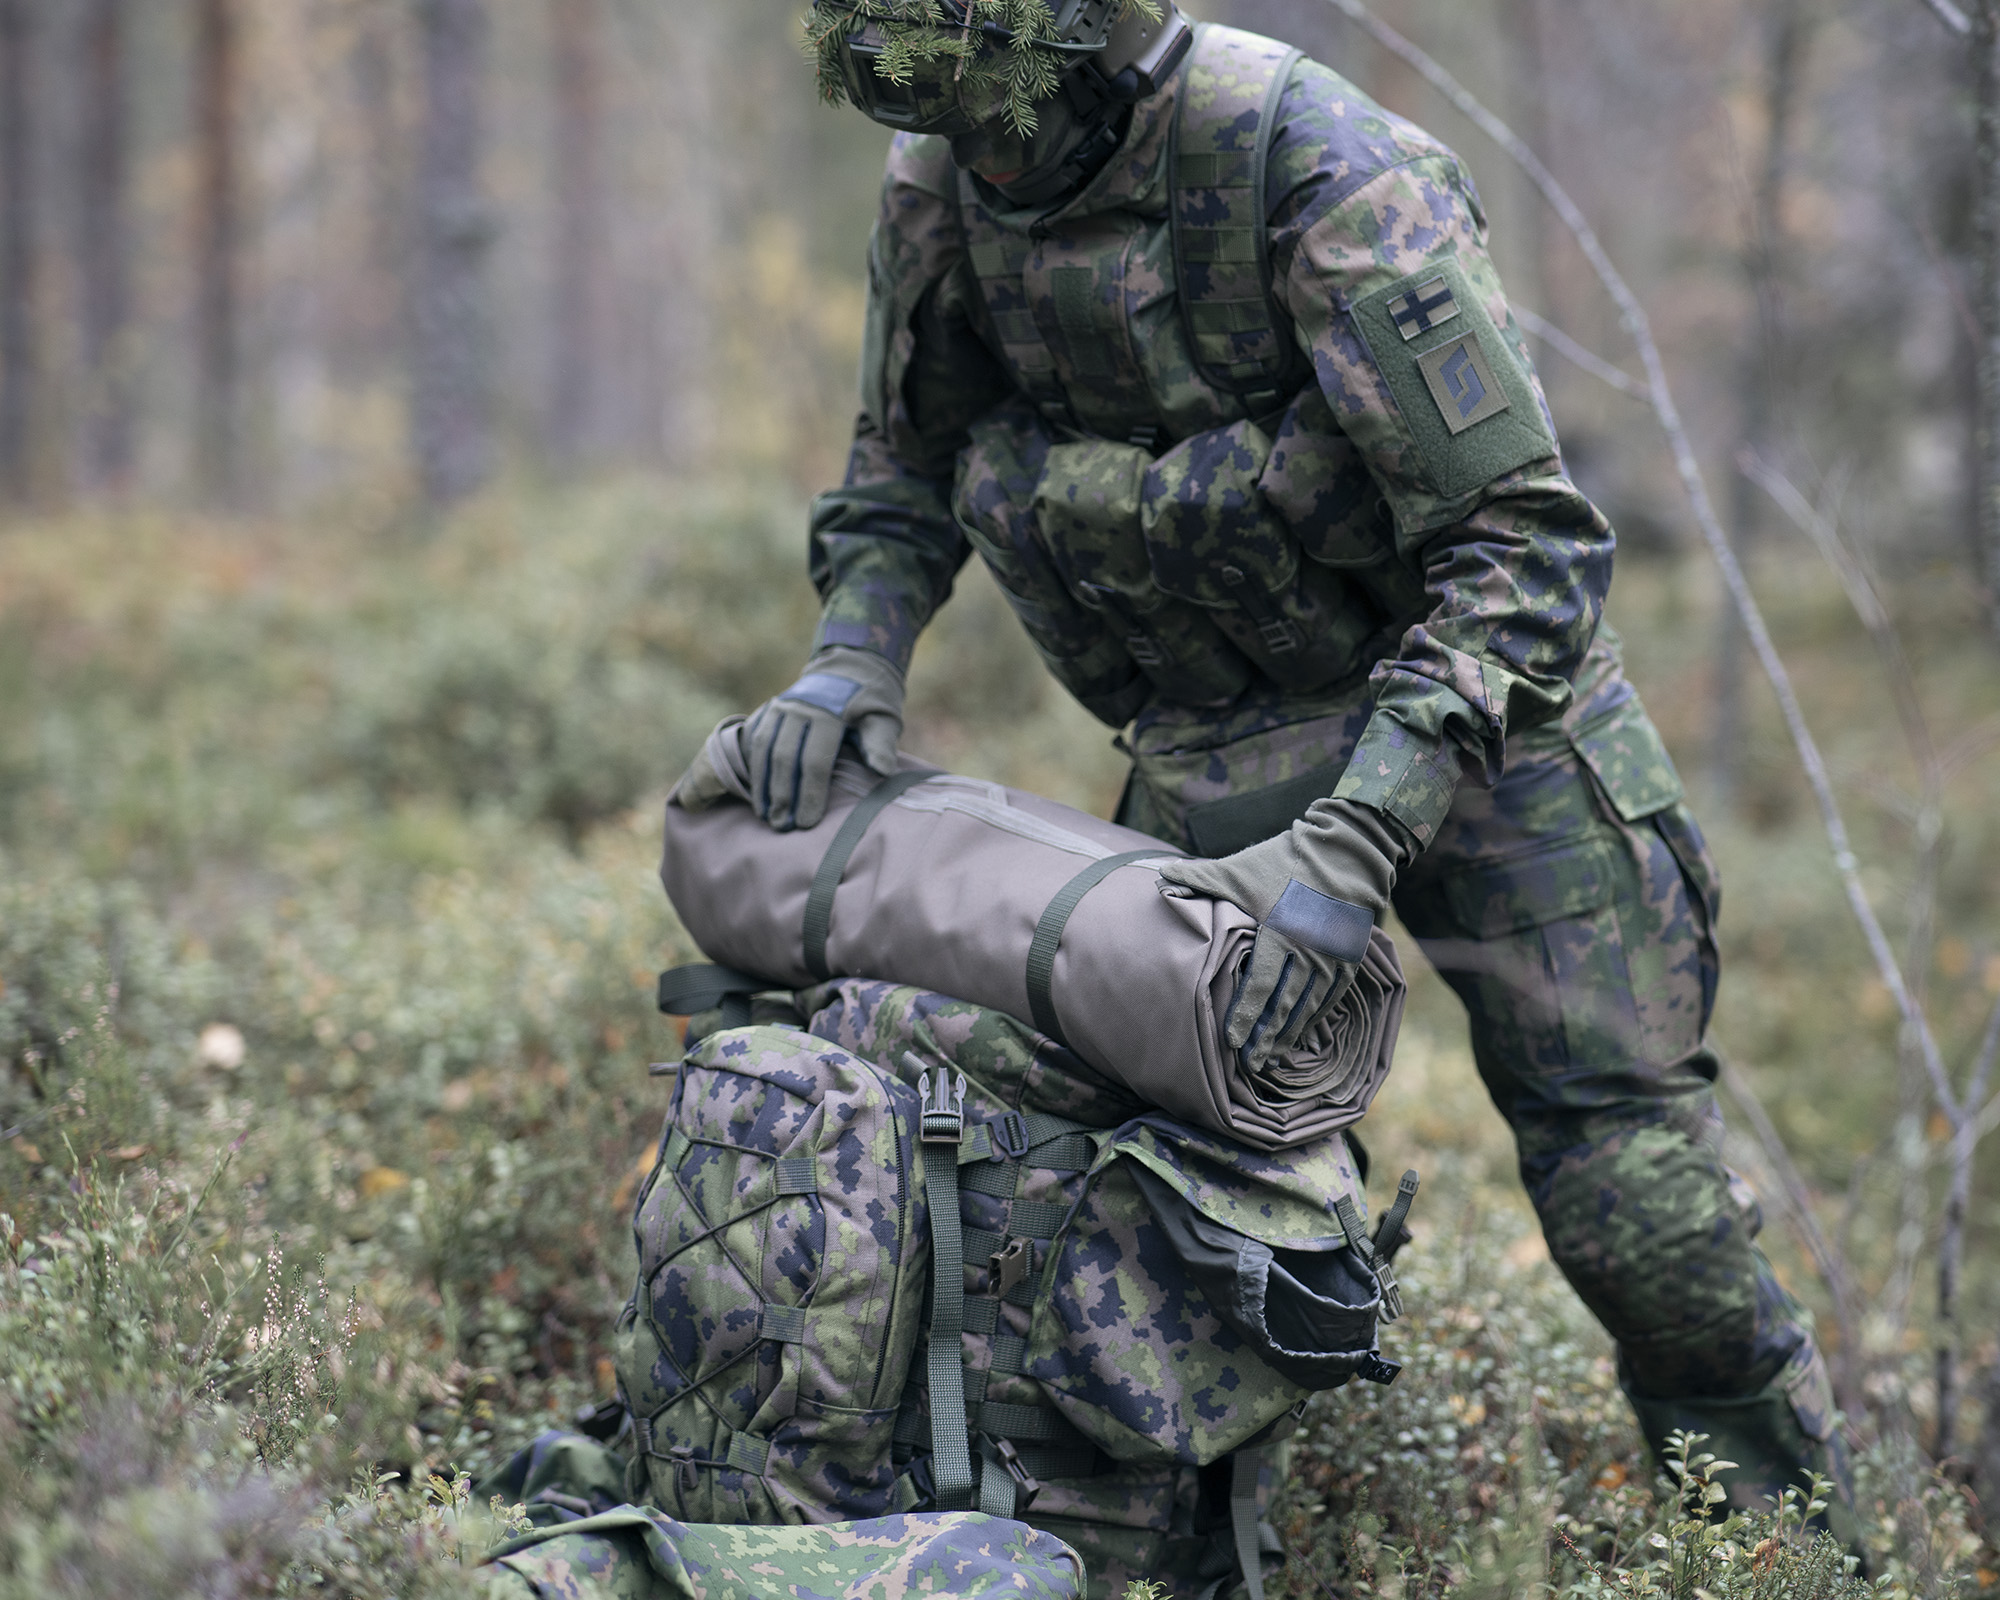 ojaška talna podloga za v šotor za 20 oseb finskih obrambnih sil Savotta FDF 20-HQ ter Savotta FDF 20 svetlo sive barve